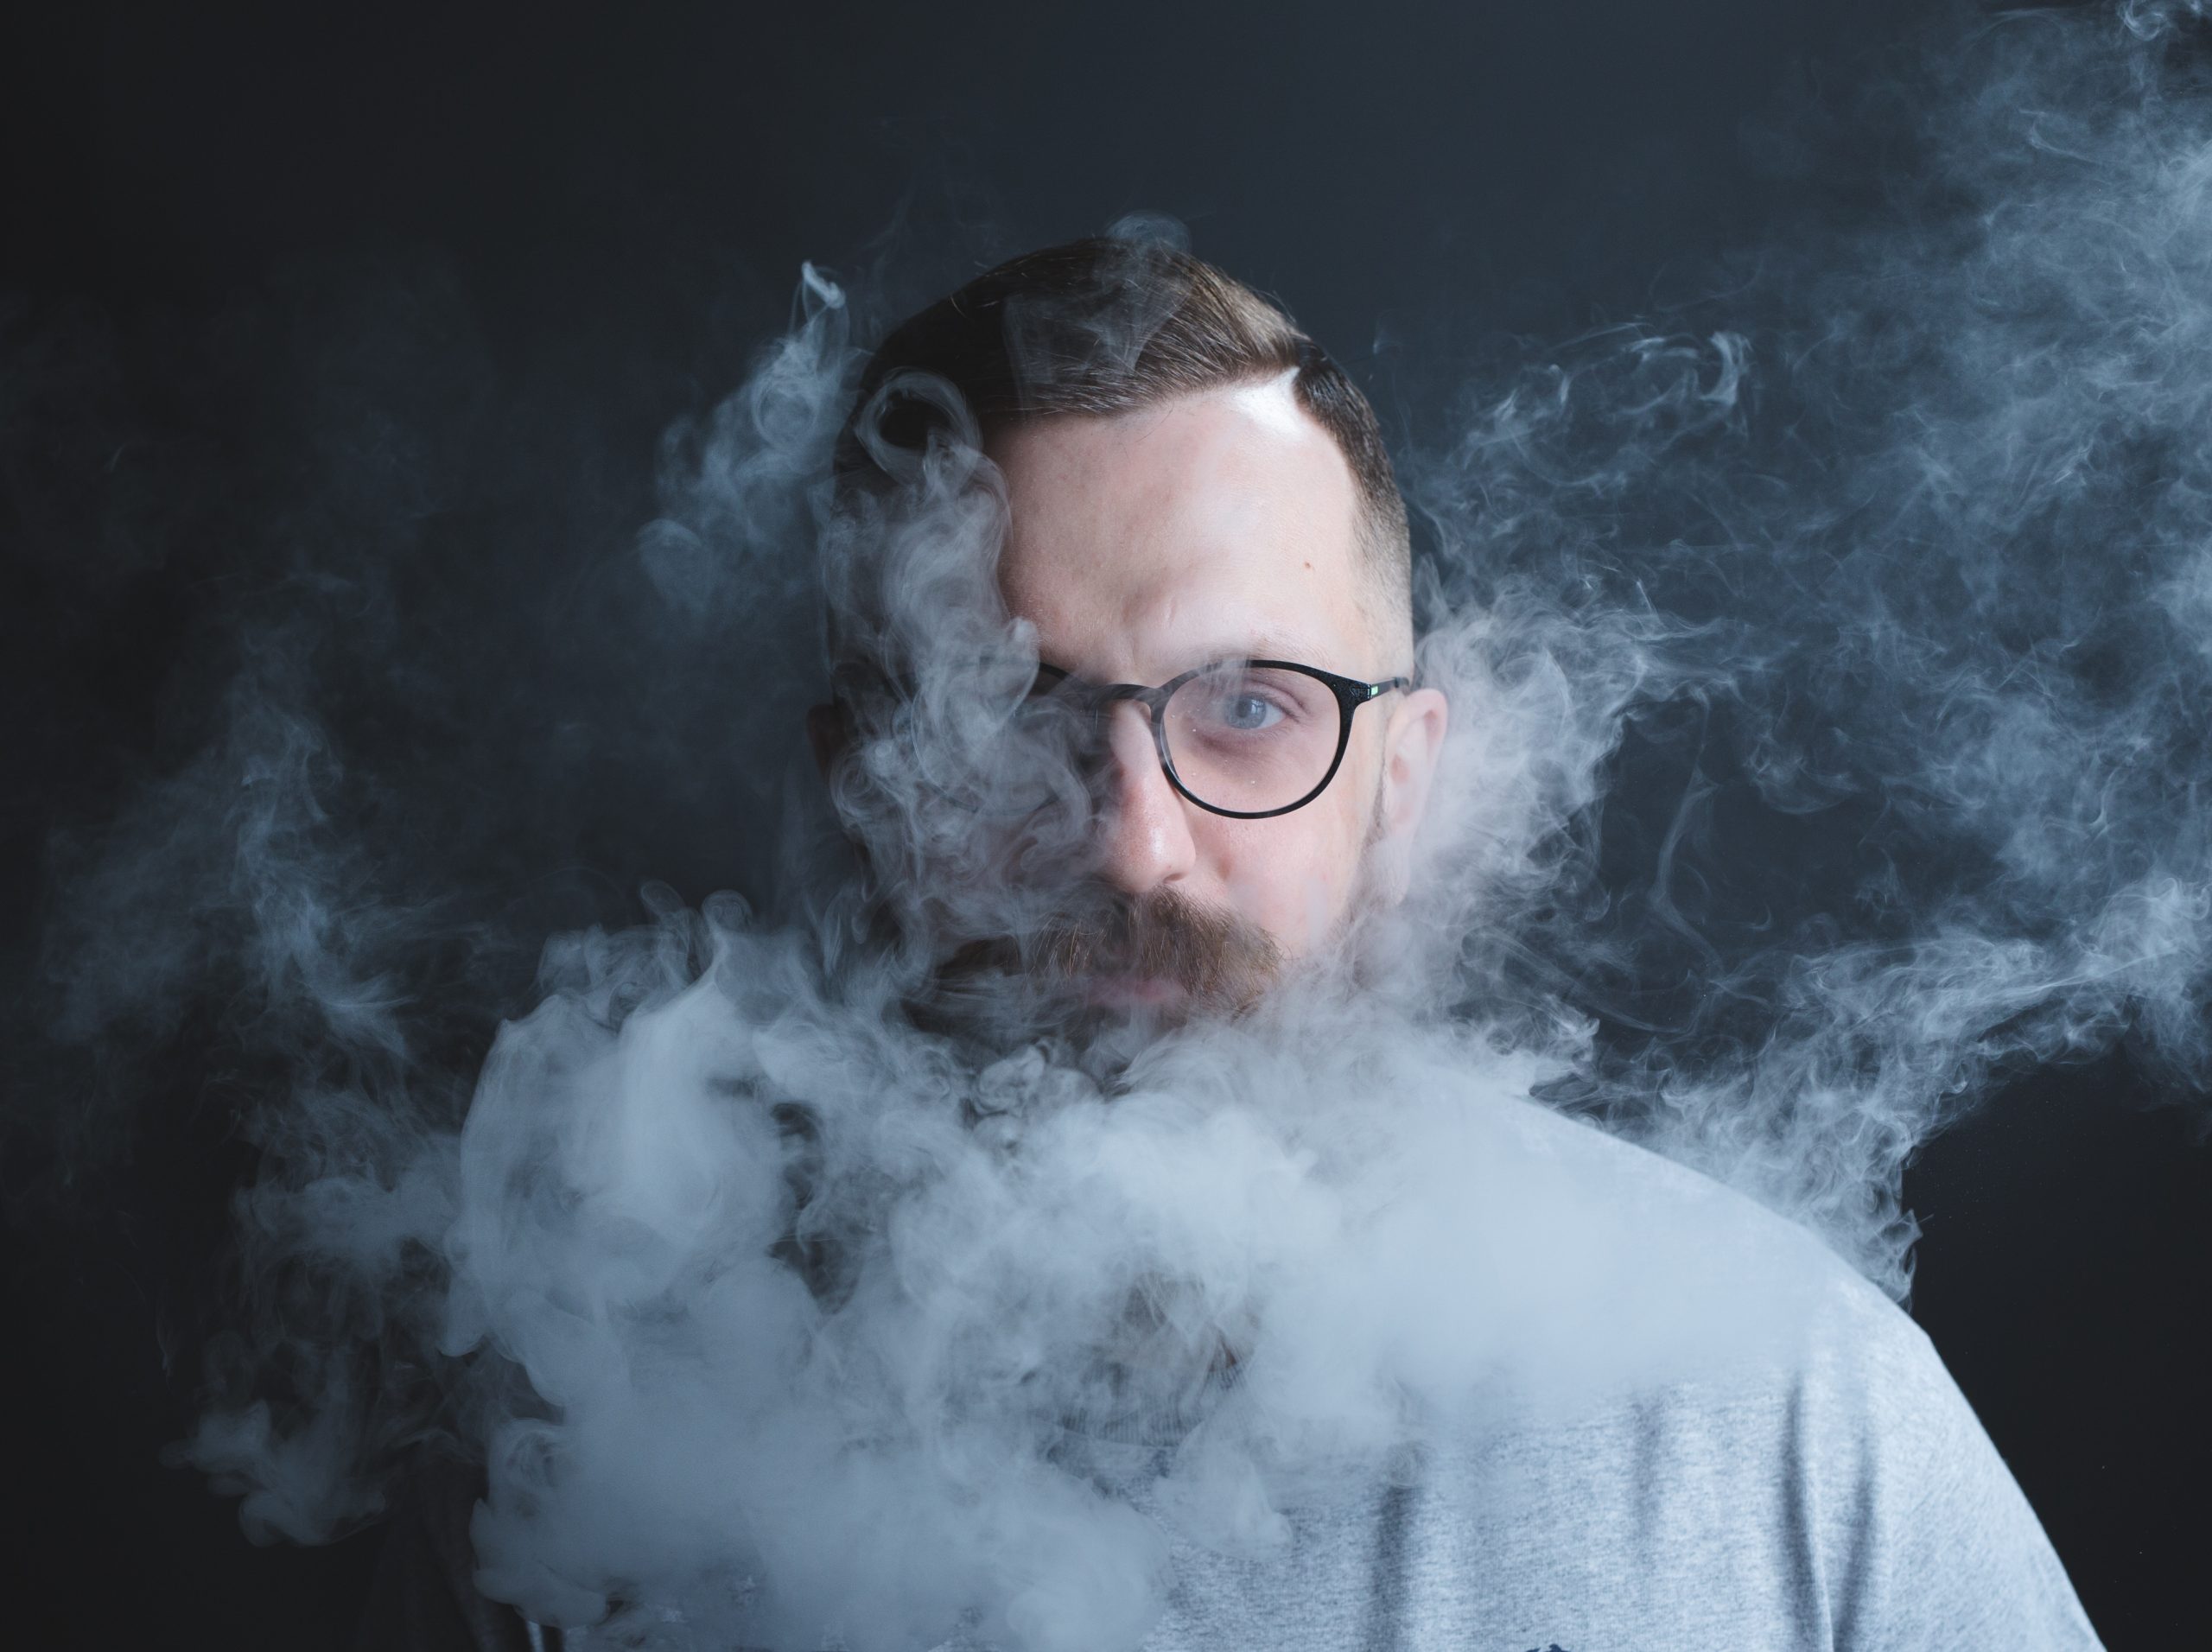 man exhaling vapors from a marijuana vaporizer